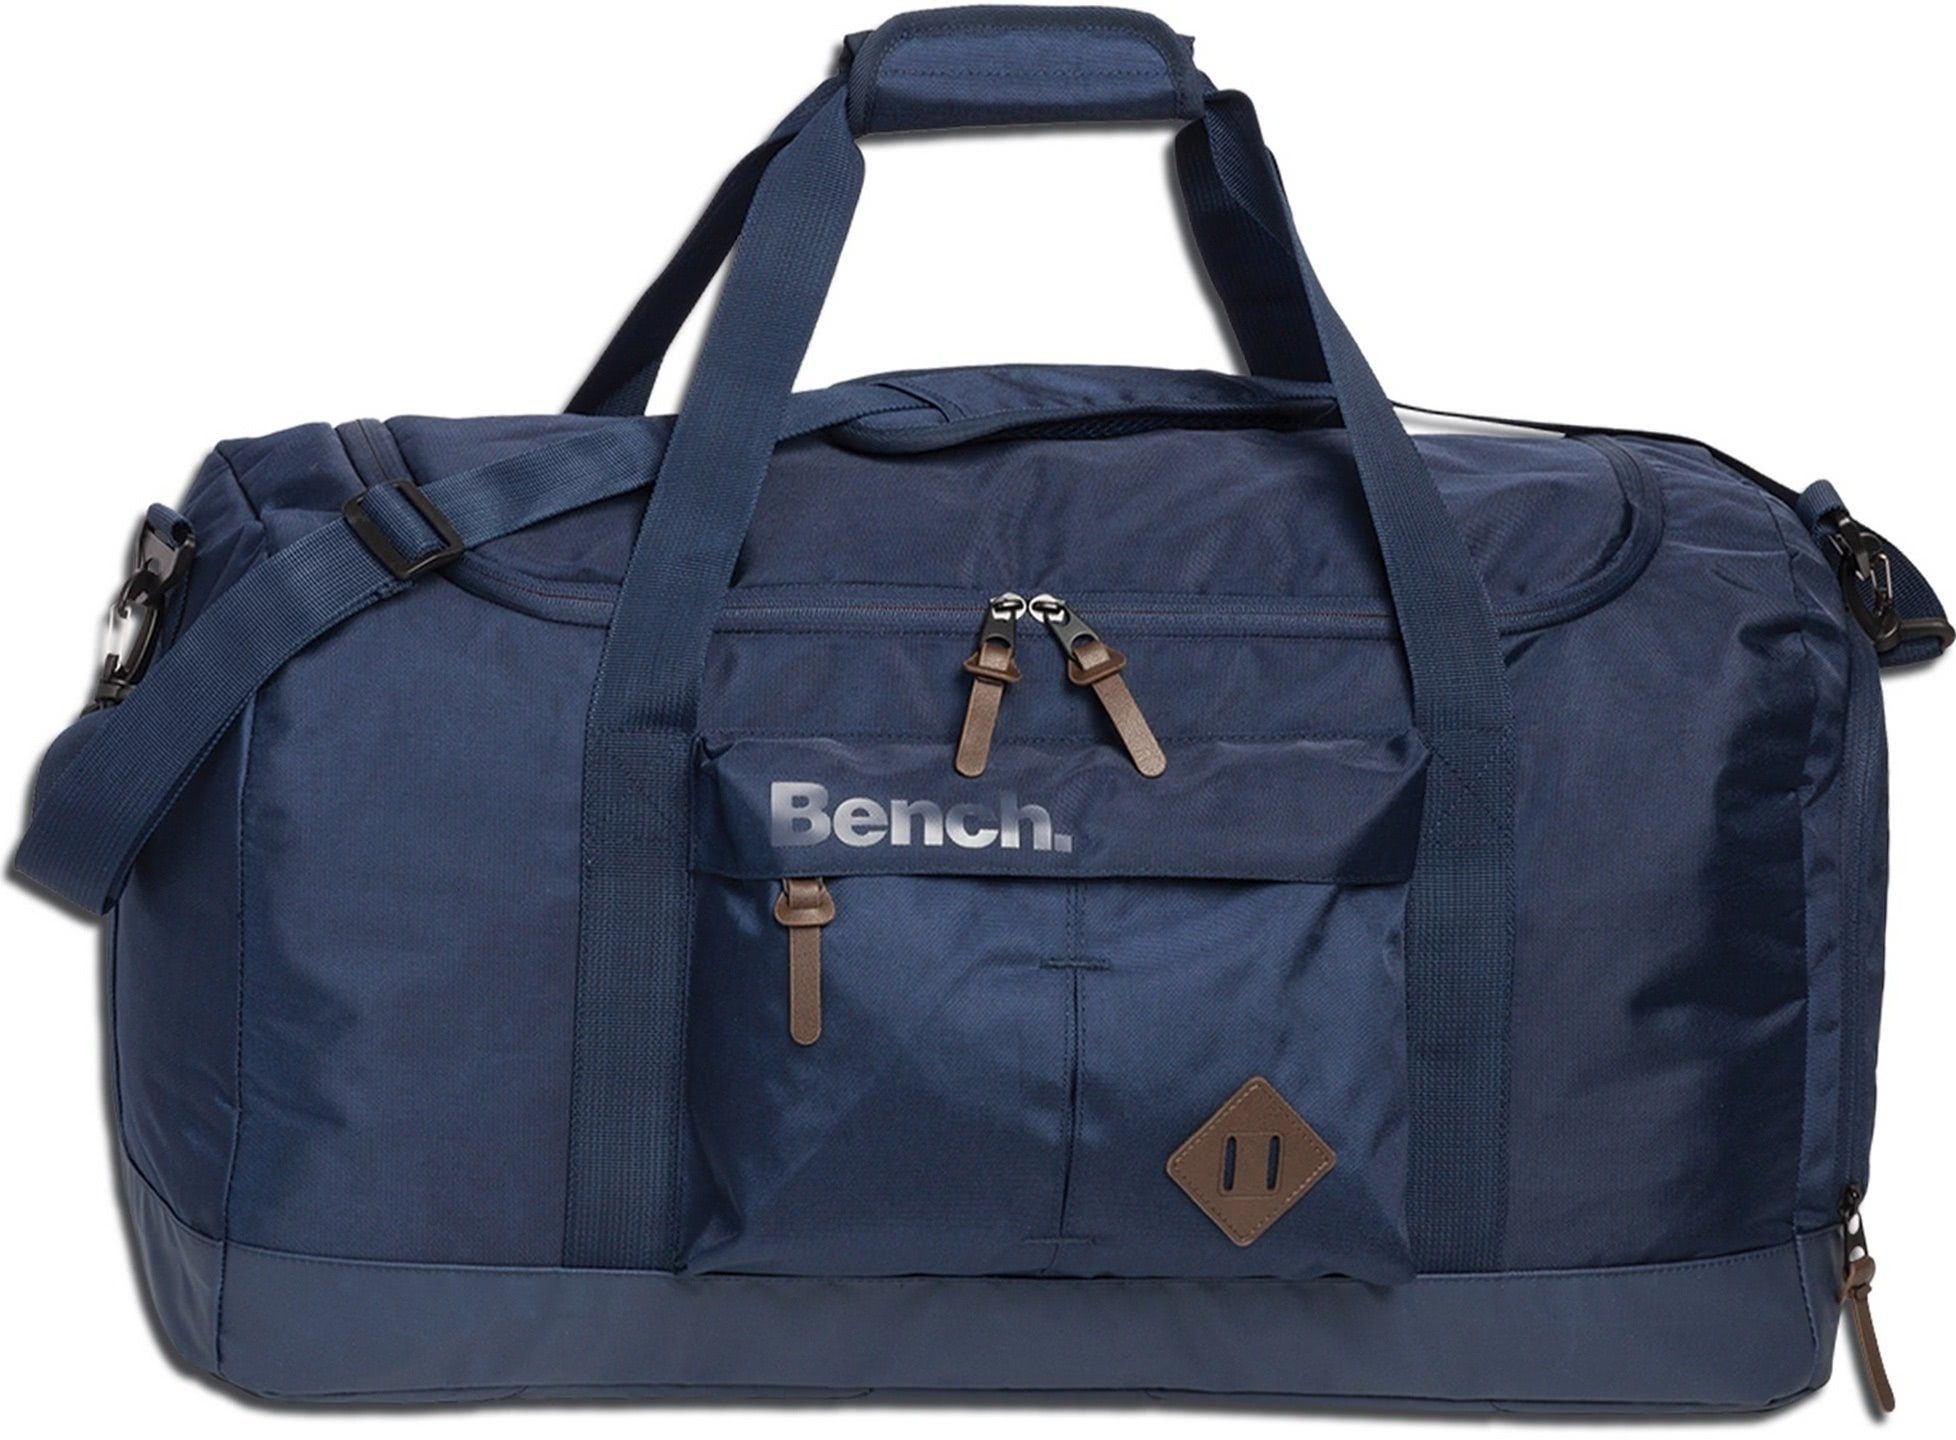 Bench. Reisetasche Bench Reisetasche Sporttasche Nylon (Sporttasche), Herren, Damen, Jugend Tasche strapazierfähiges Textilnylon dunkelblau